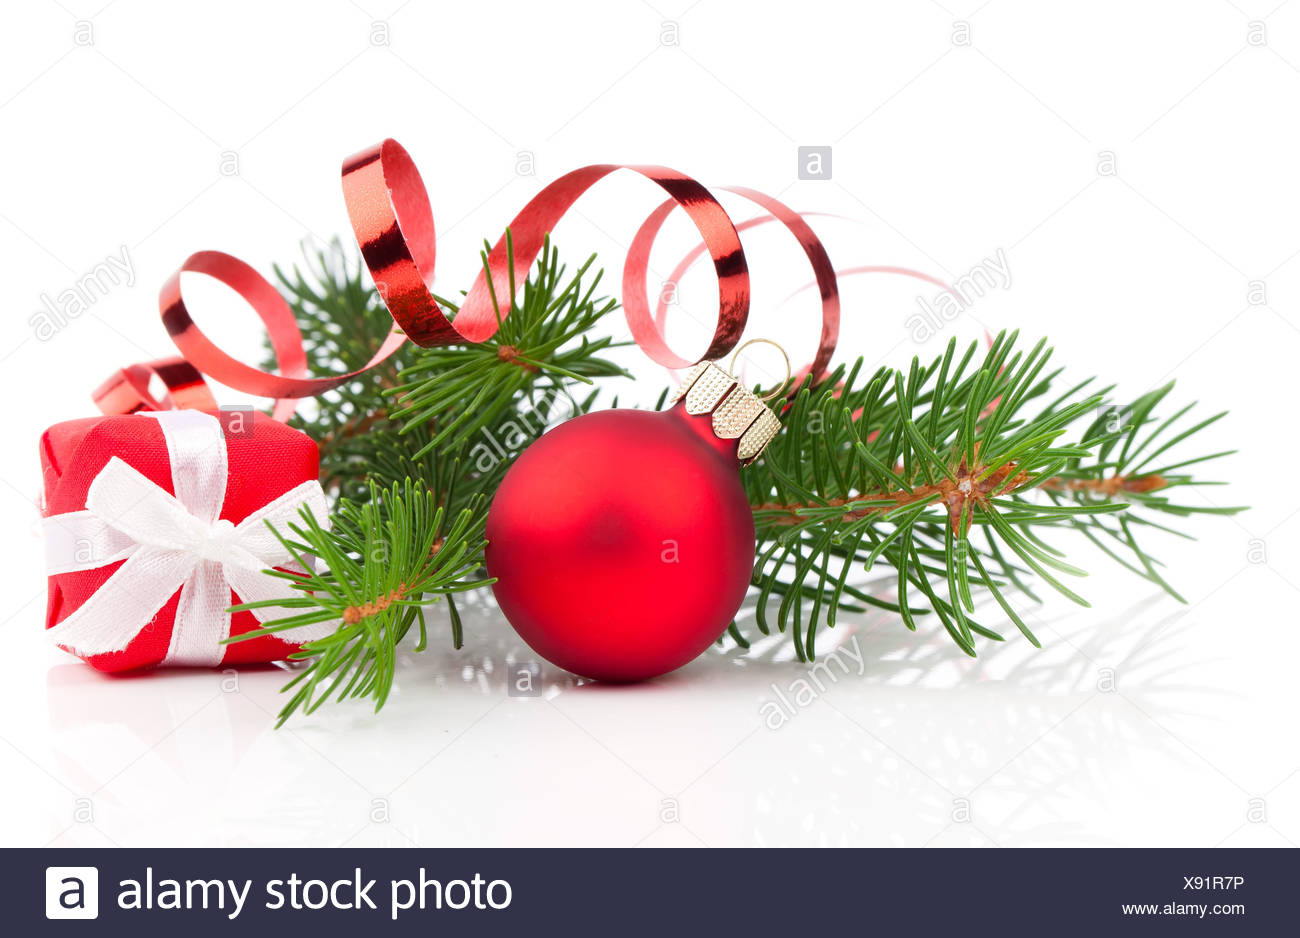 tarumedo Weihnachtskugeln Gold 24pcs Christbaumkugeln Weihnachtsbaum B/älle Christmas Tree Ornaments Baubles Ball Weihnachtsbaumschmuck f/ür Weihnachten Hochzeitsfest Xmas Holiday 4cm